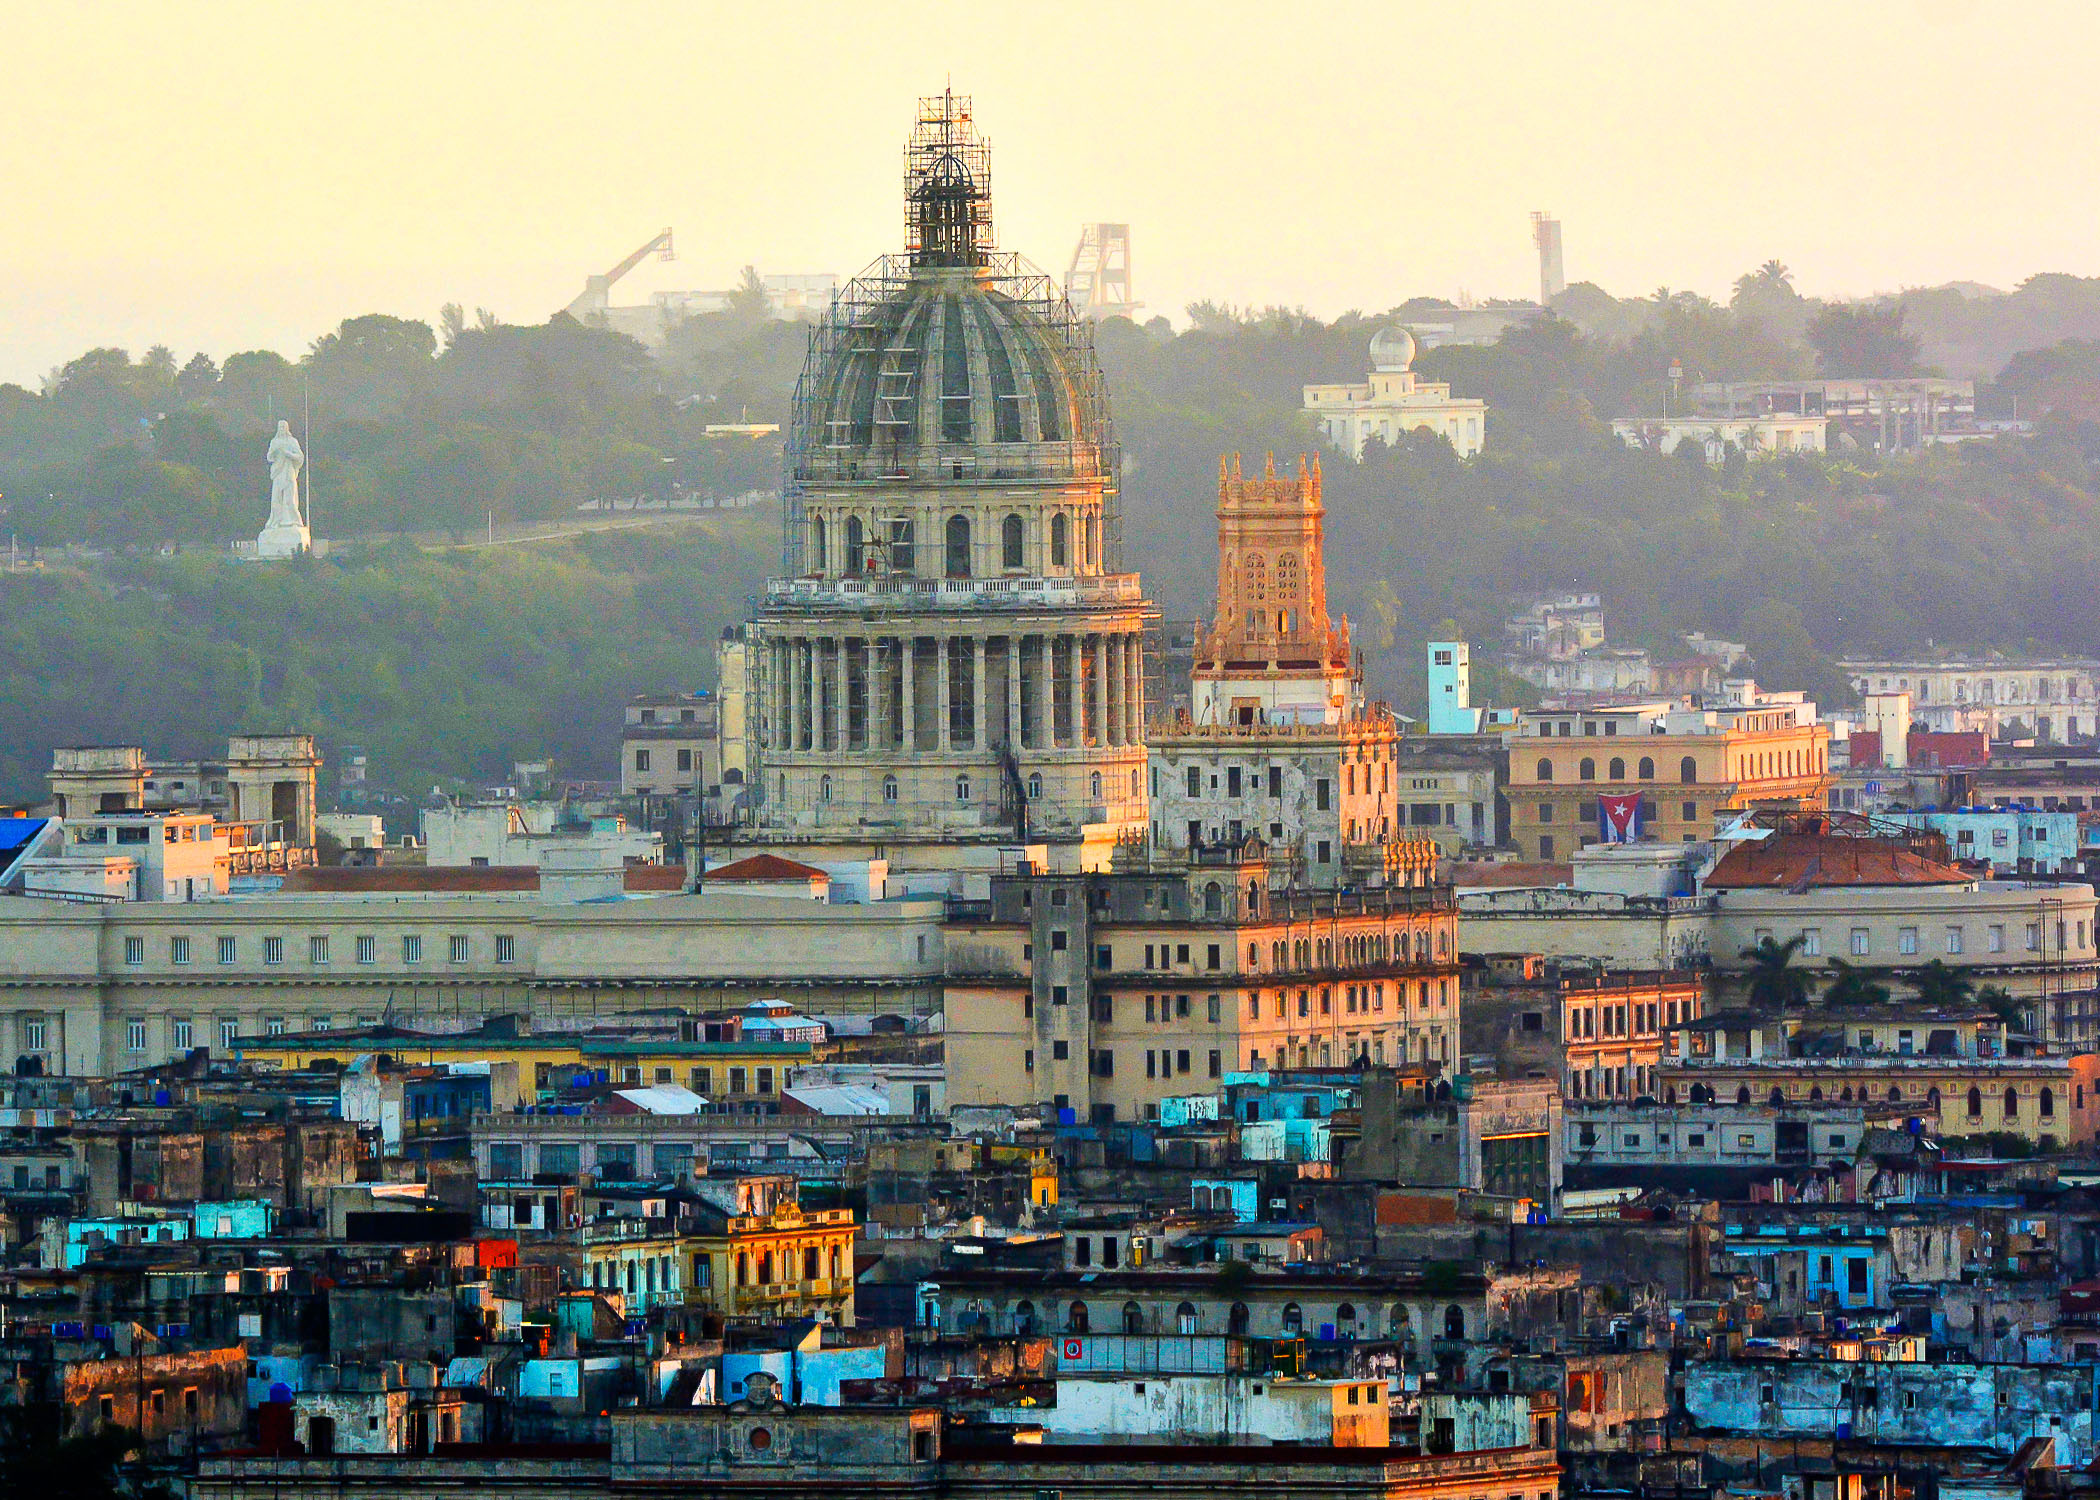 Un nuevo rostro para La Habana Vieja en su 500 aniversario